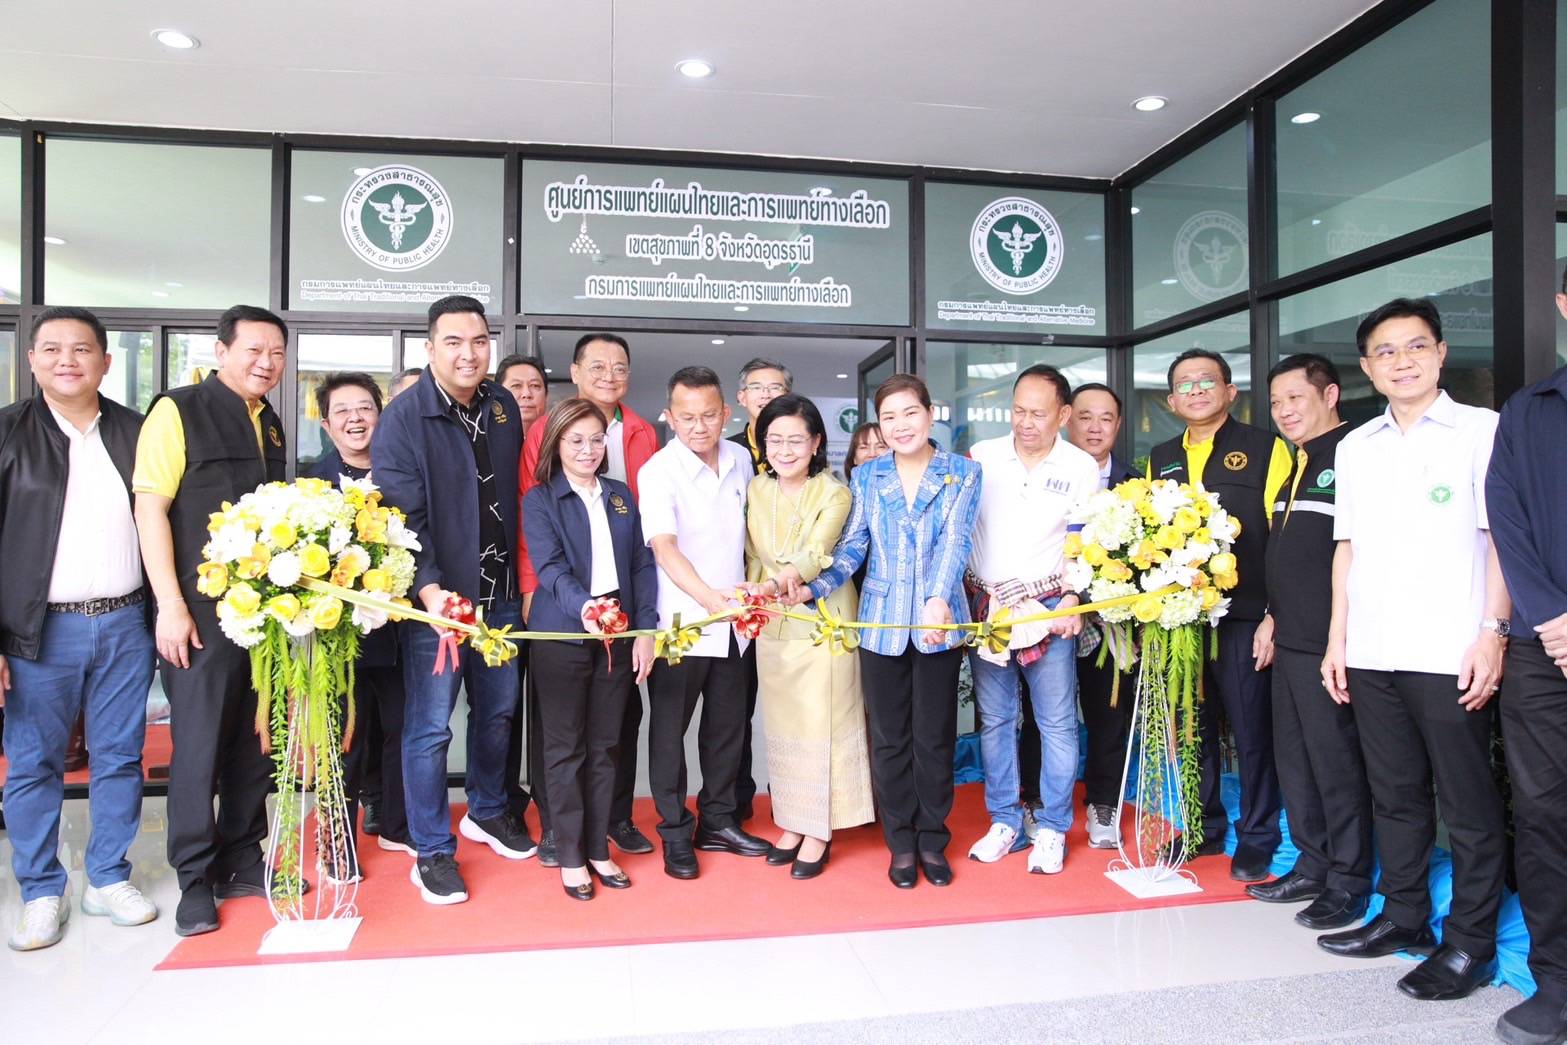 อุดรธานี-“หมอสมศักดิ์”รมว.สธ.ลงพื้นที่อุดรฯ เปิดอาคารศูนย์การแพทย์แผนไทยและการแพทย์ทางเลือก เขตสุขภาพที่ 8